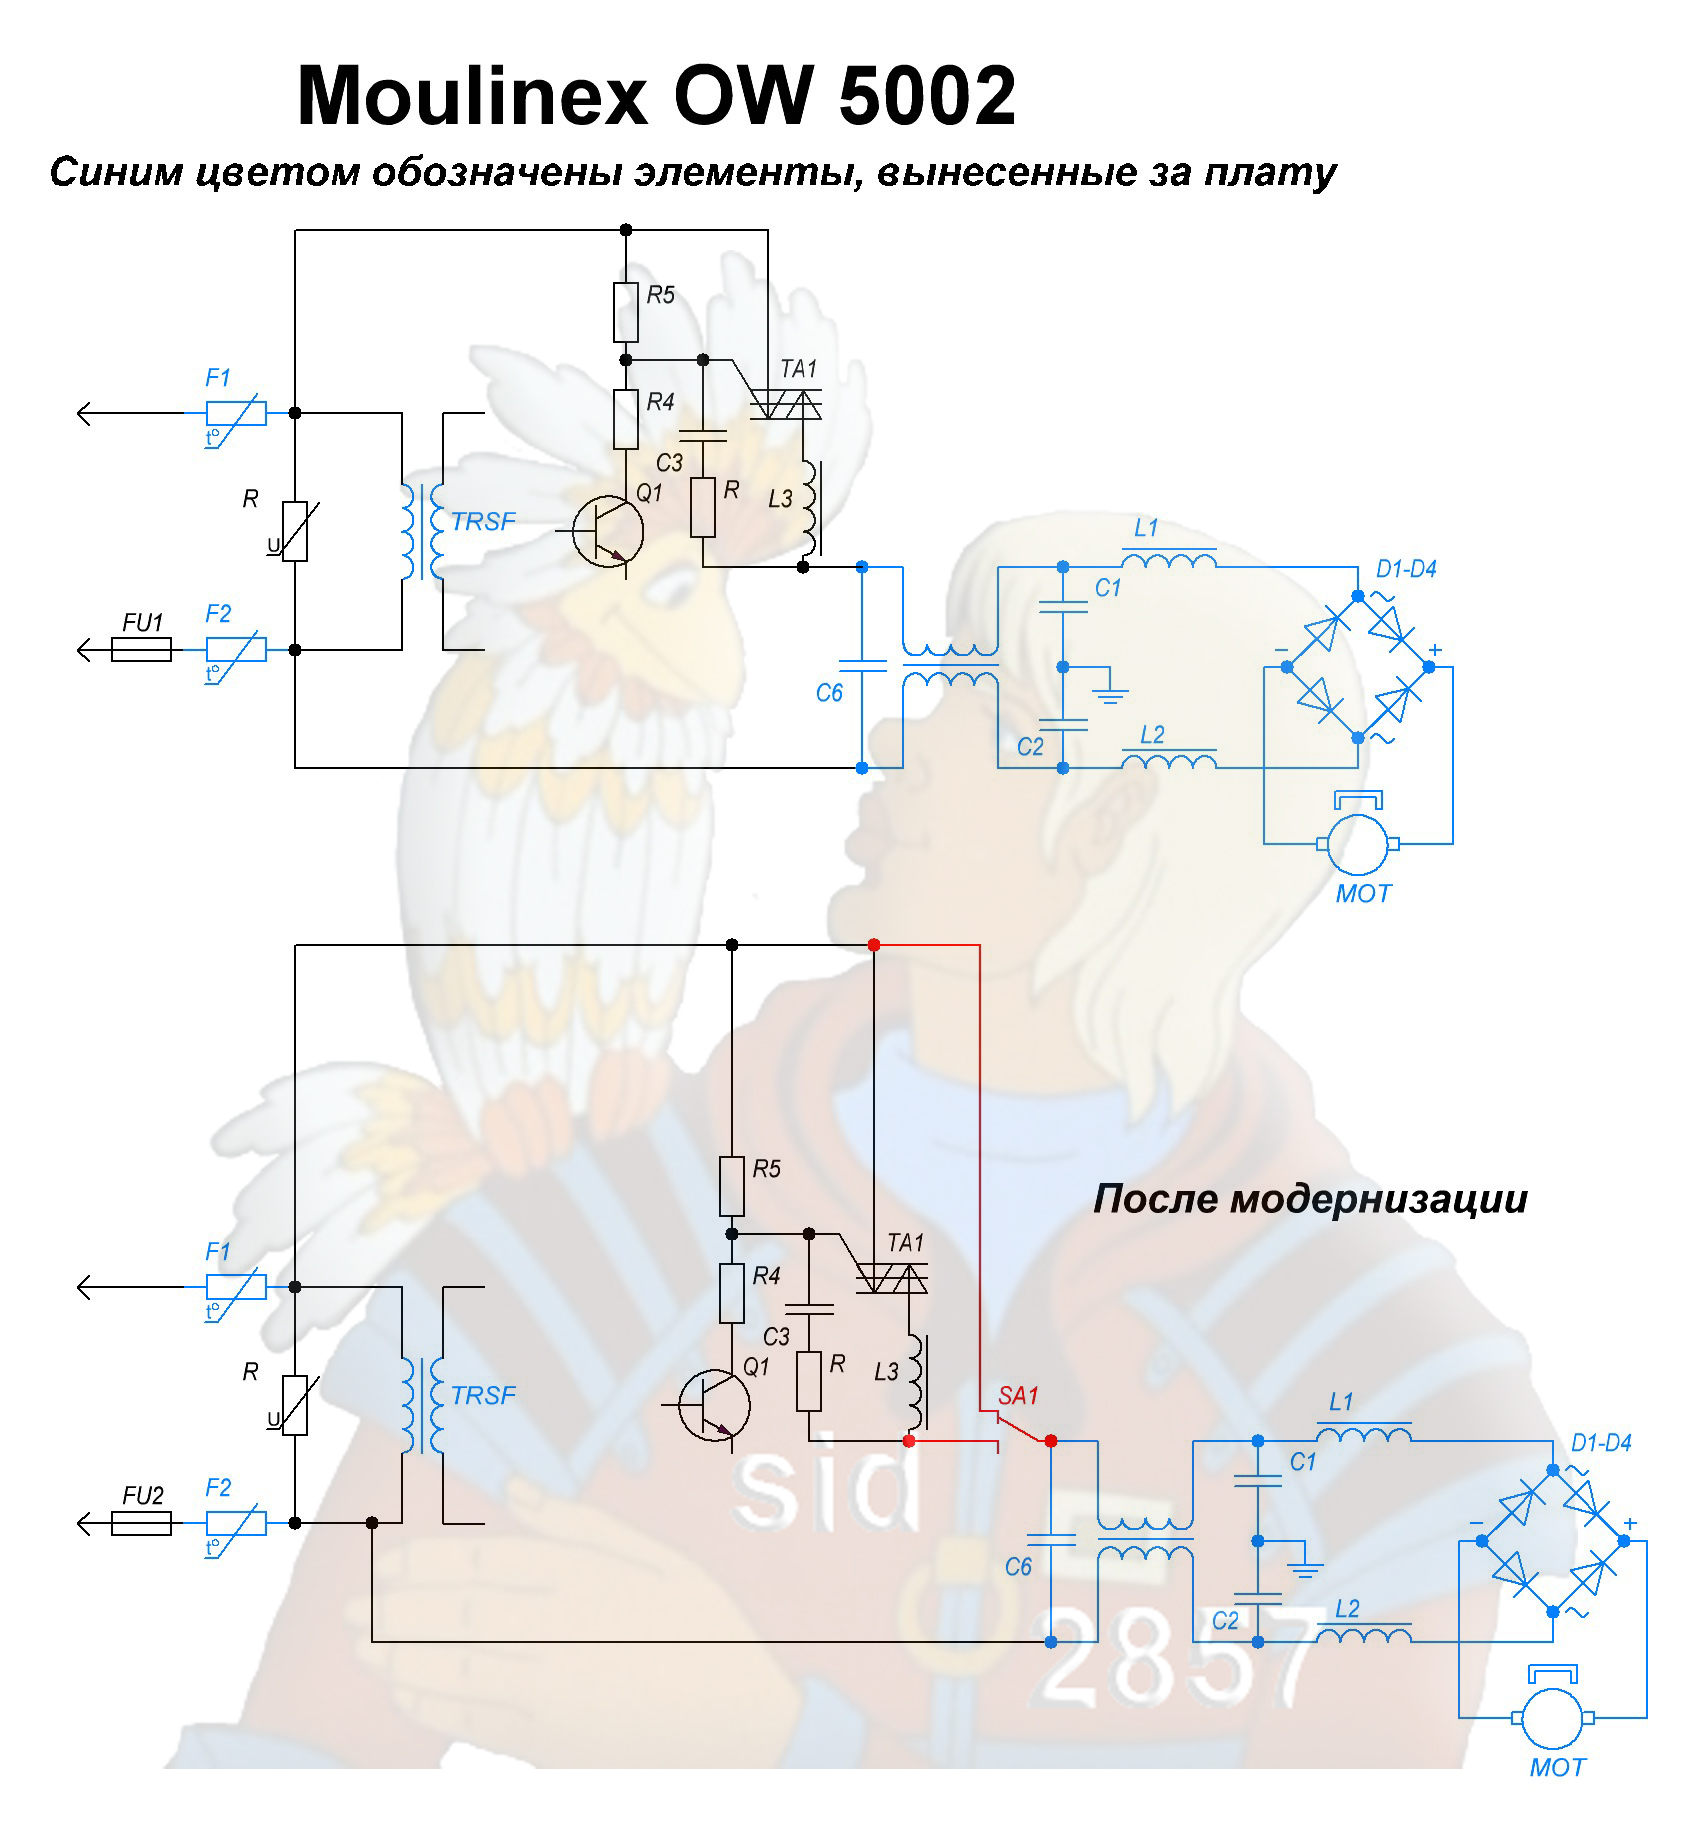 Naprawa wyłączenia silnika HP Moulinex 5002